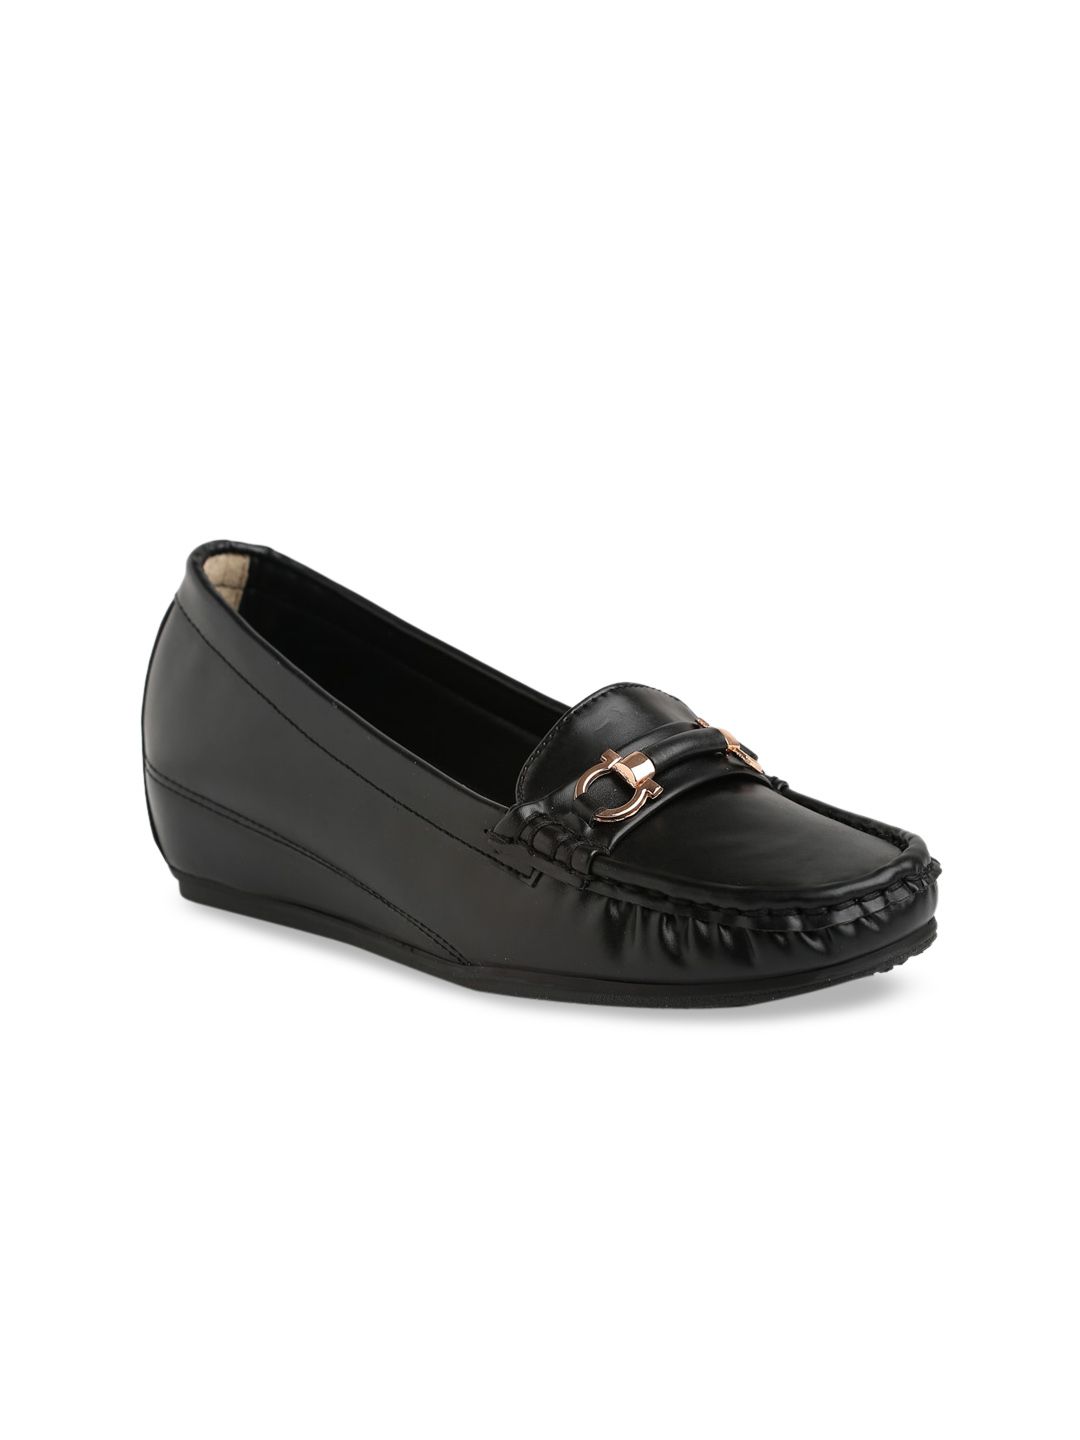 Flat n Heels Women Black Loafers Price in India